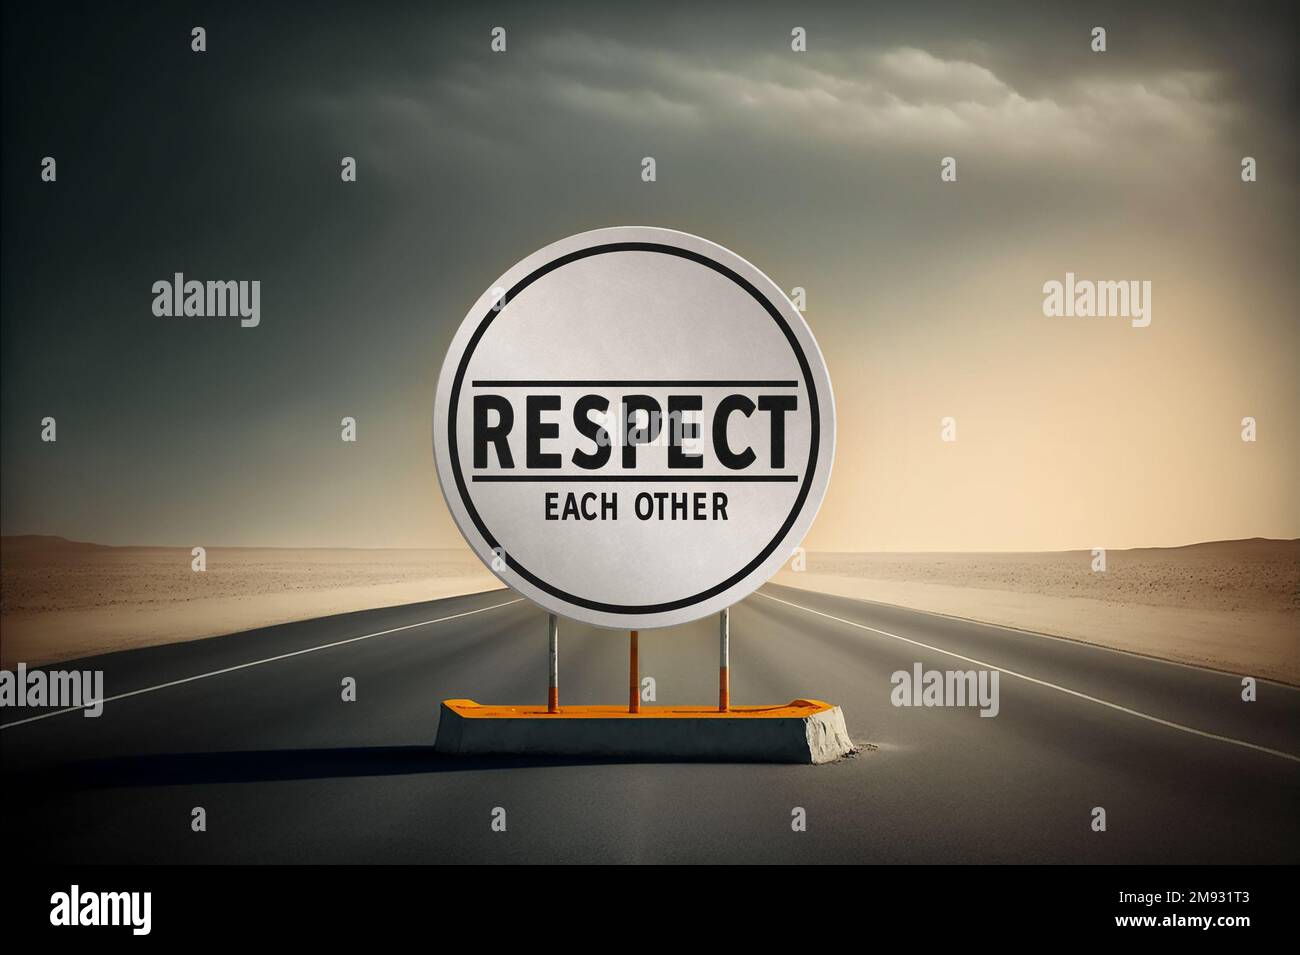 RESPECT - messaggio segnali stradali Foto Stock